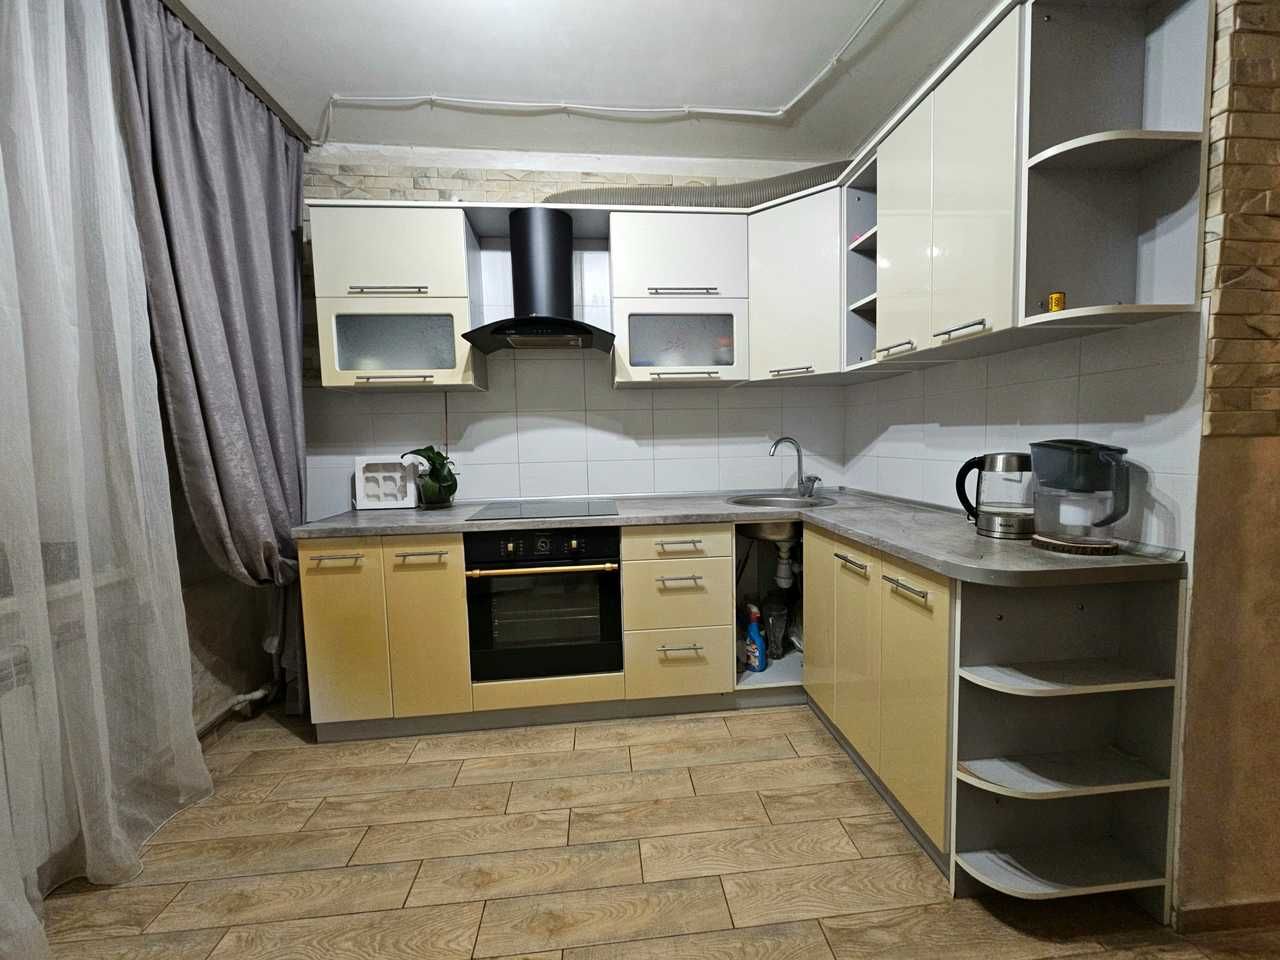 Продам 2-к квартиру с ремонтом на Клочко, ул. Байкальская (кольцо)